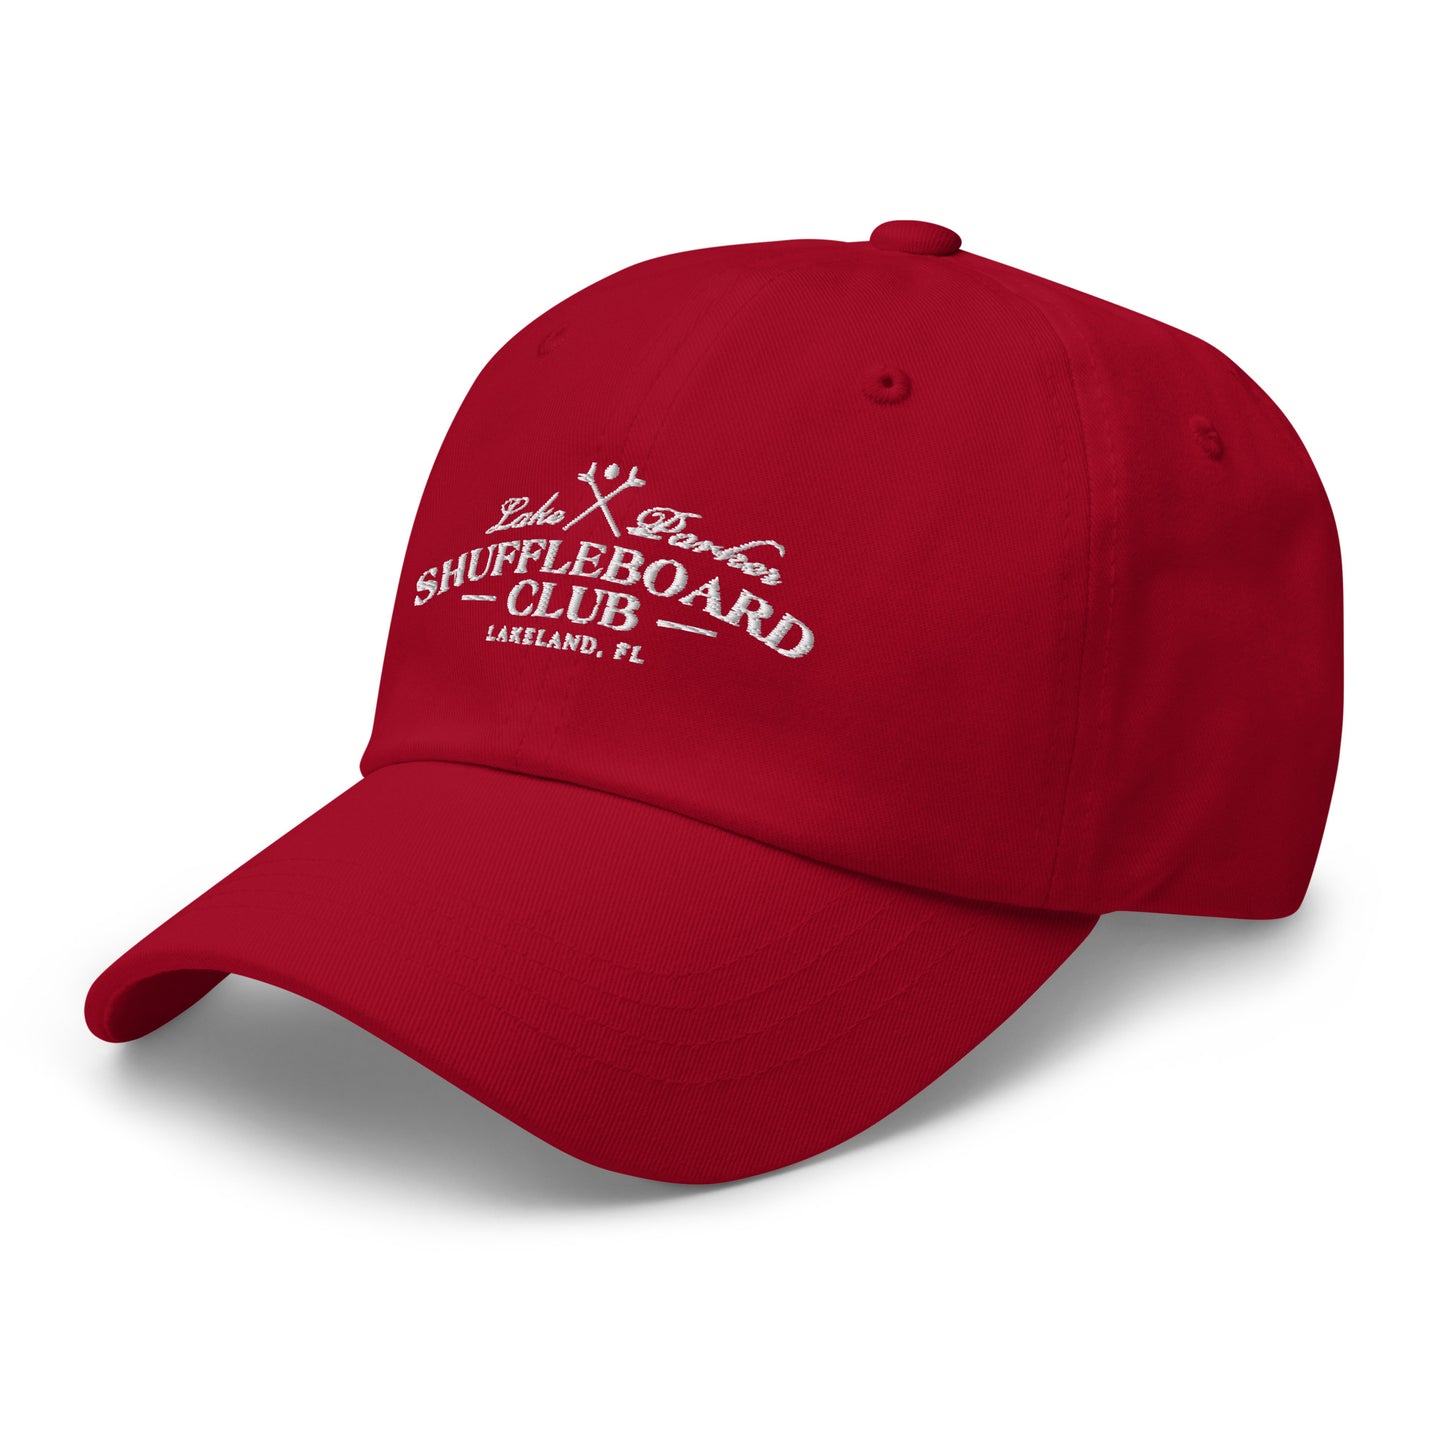 Lakeland Shuffleboard - Dad hat